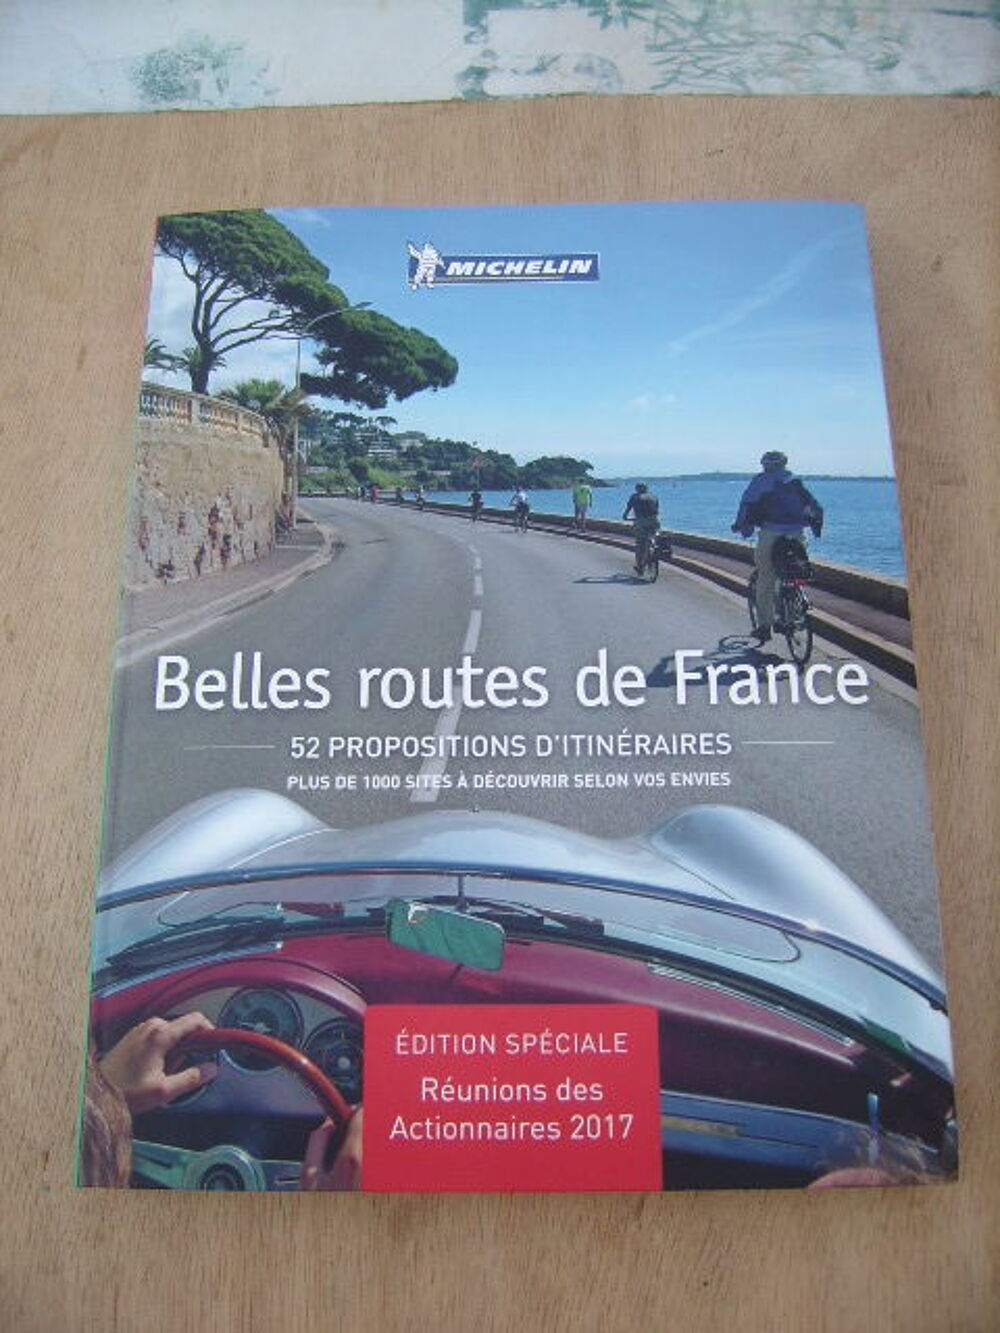 Livre Touristique MICHELIN / BELLES ROUTES DE FRANCE
Livres et BD